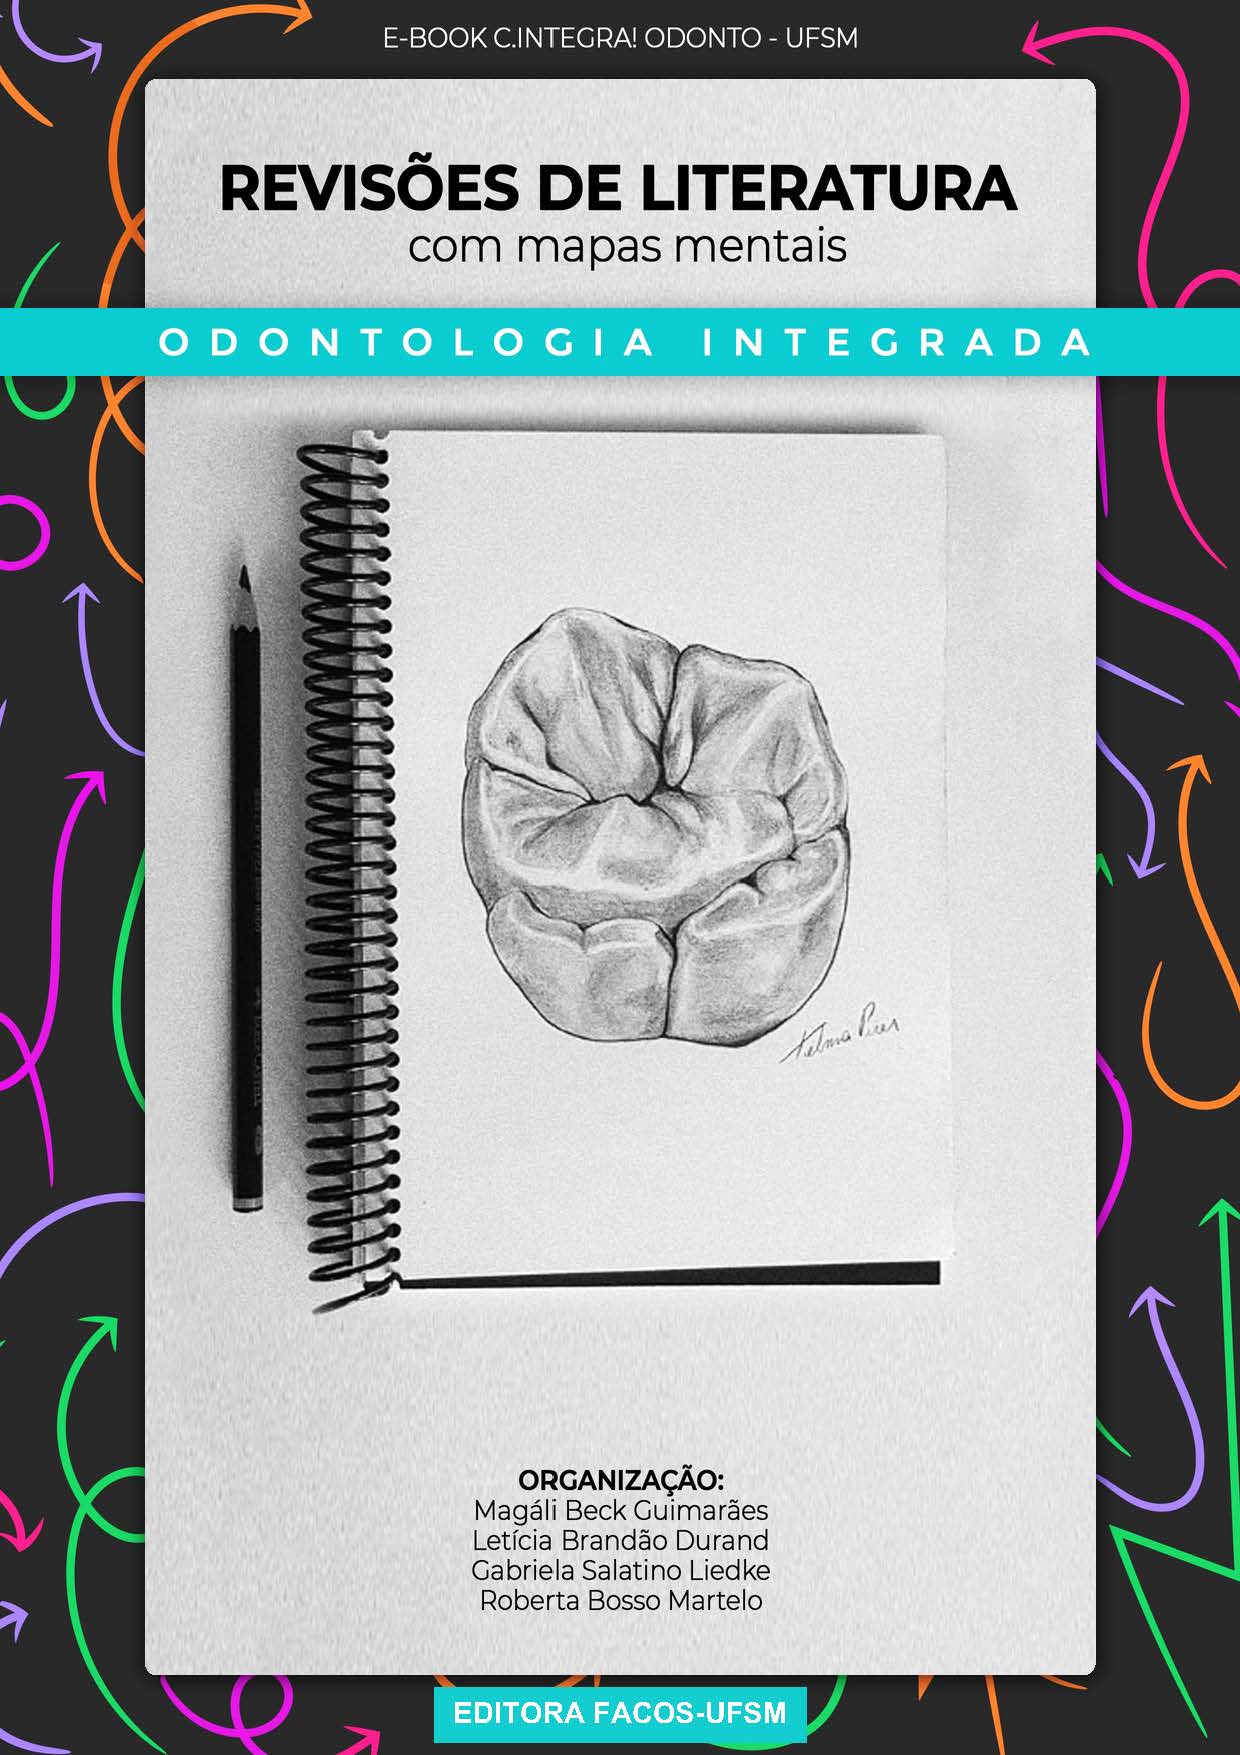 Capa ebook: Odontologia integrada. Revisões de literatura com mapas mentais